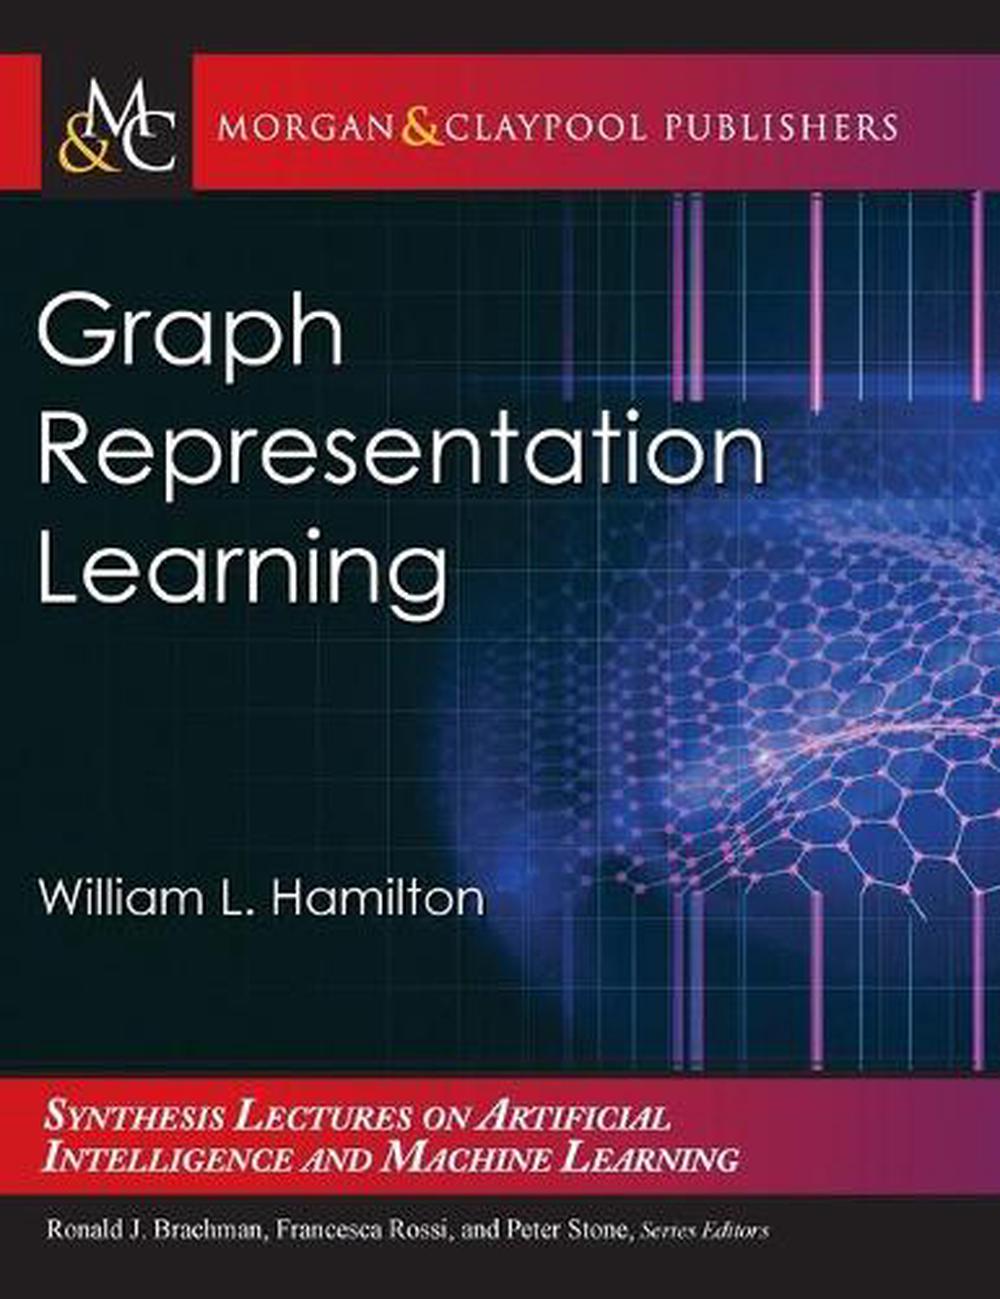 graph representation learning william l. hamilton